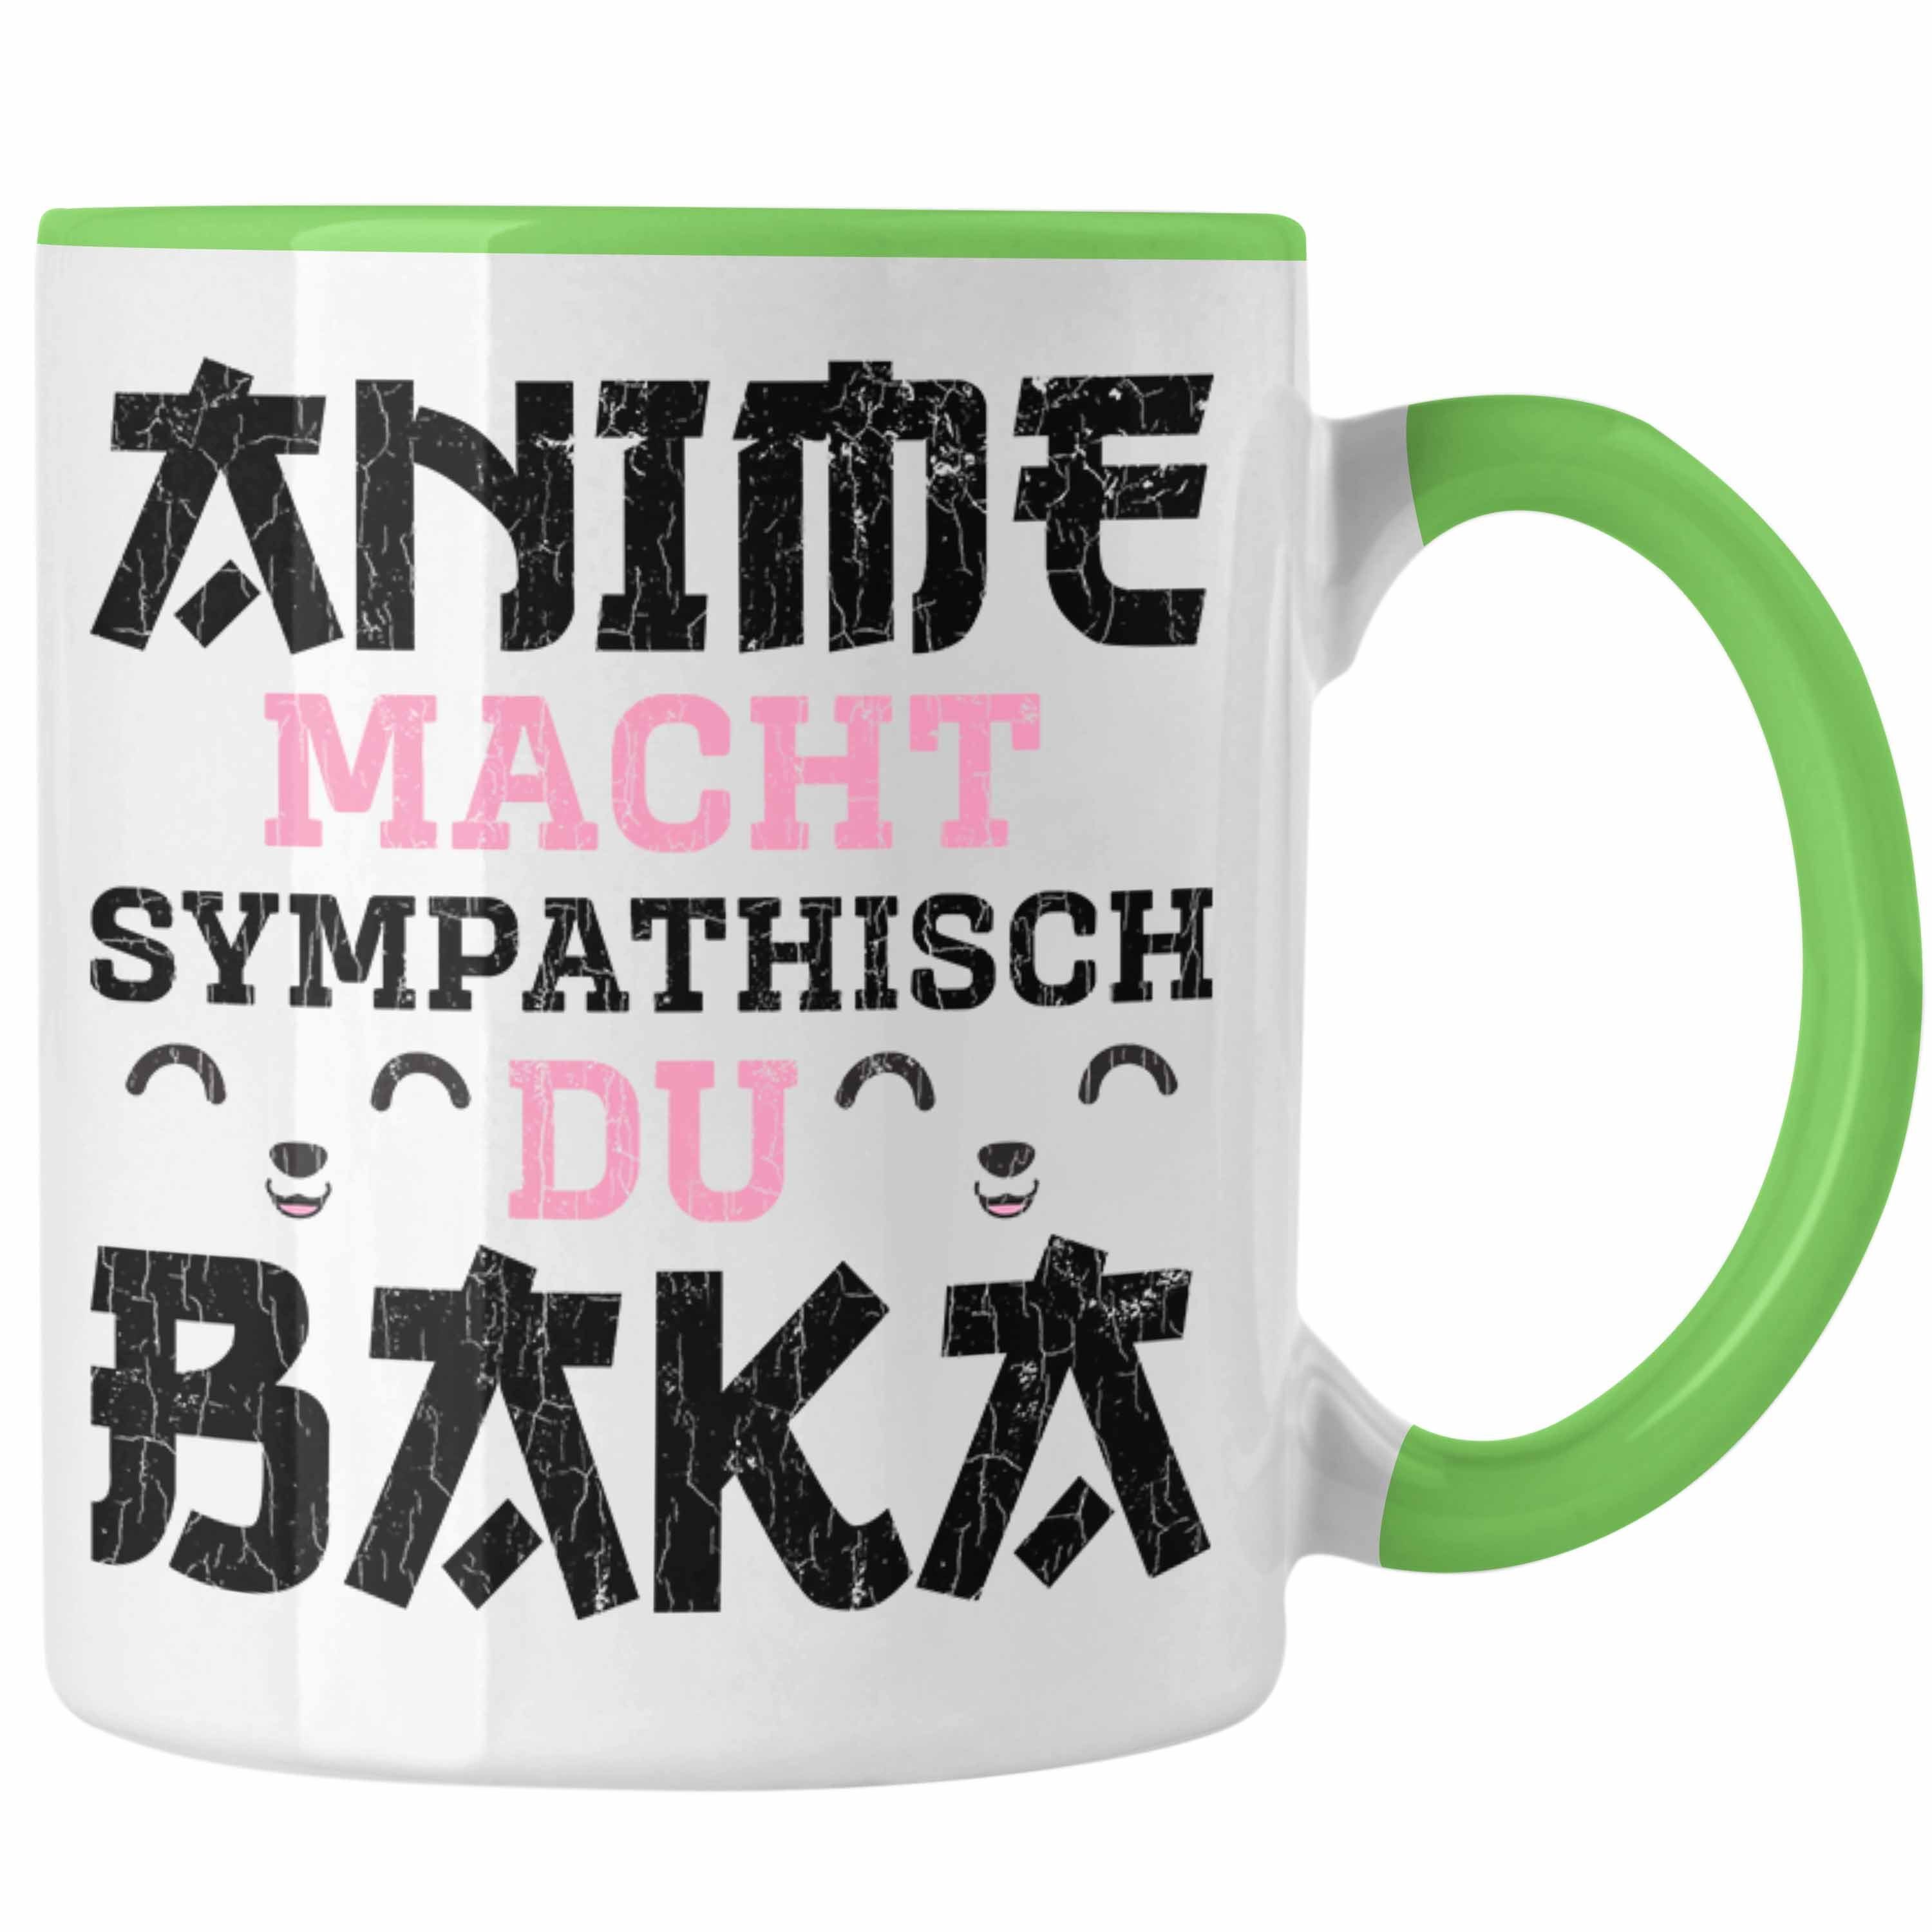 Trendation Tasse Trendation - Anime Tasse Geschenk Spruch Kaffeetasse Geschenke Deko Anme Fan Sympathisch Grün